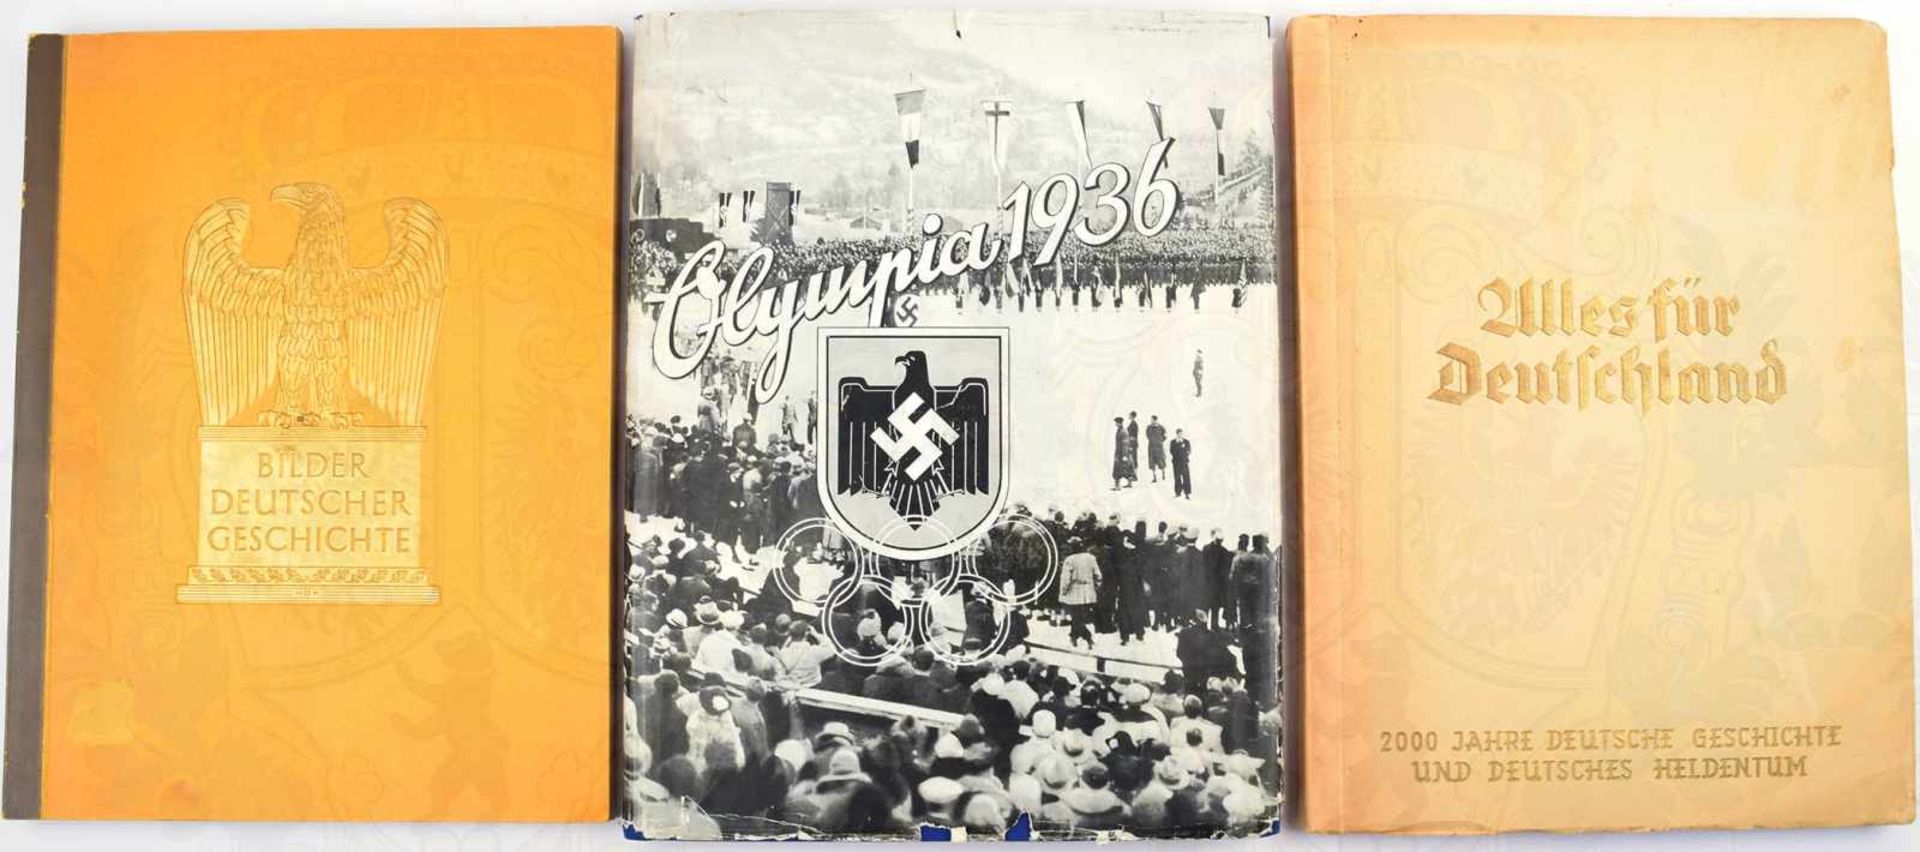 3 ALBEN, Alles für Deutschland; Bilder Deutscher Geschichte; Olympia 1936, alle kpl., Reemtsma/Yosma